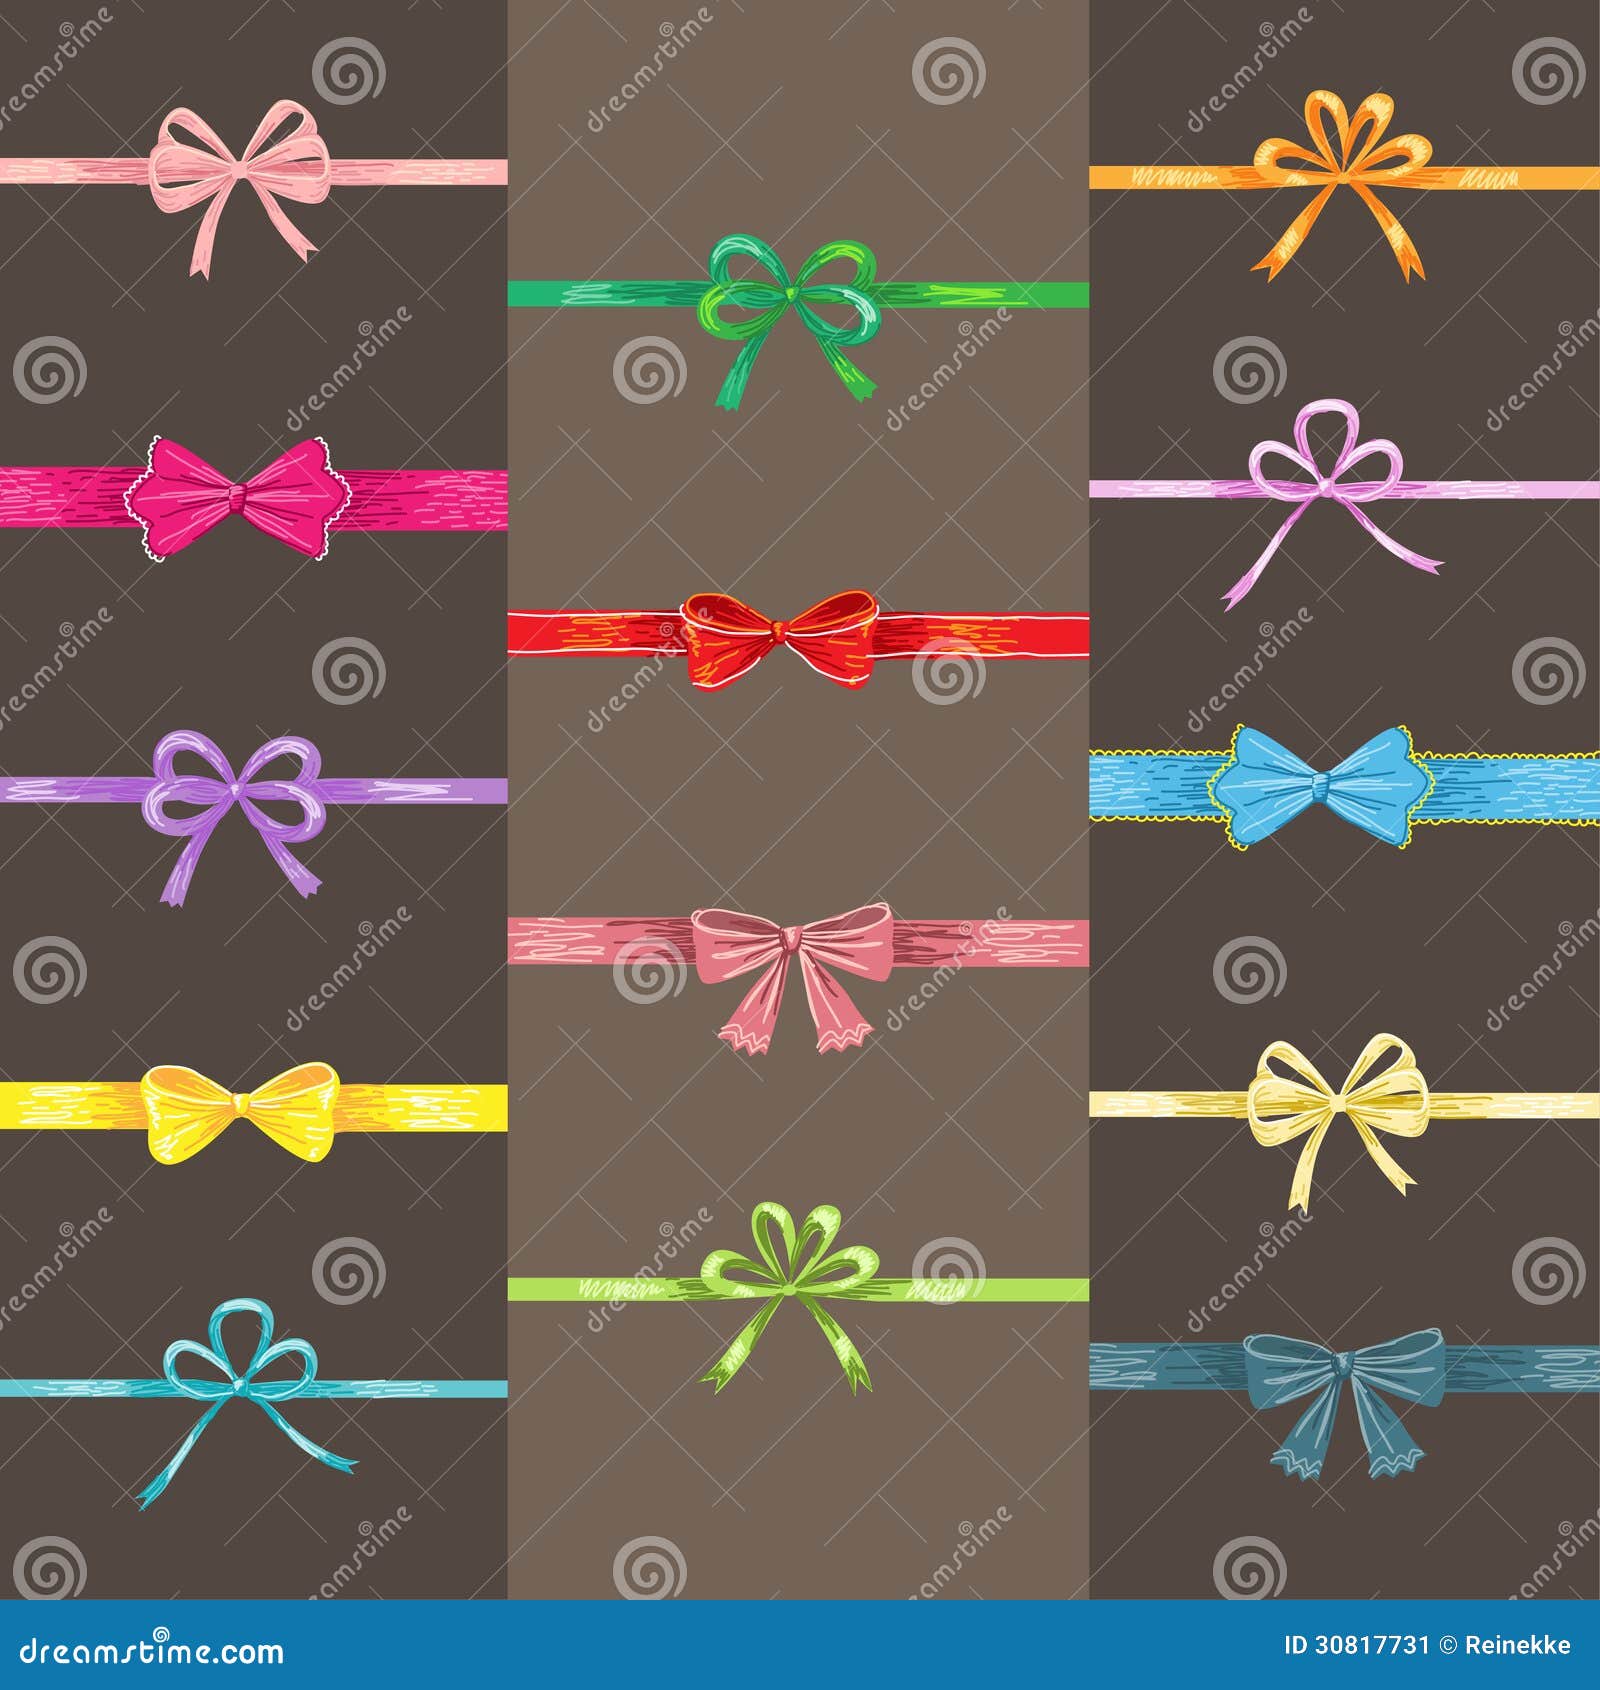 Cute ribbon cartoon stock vector. Illustration of cute - 144475858